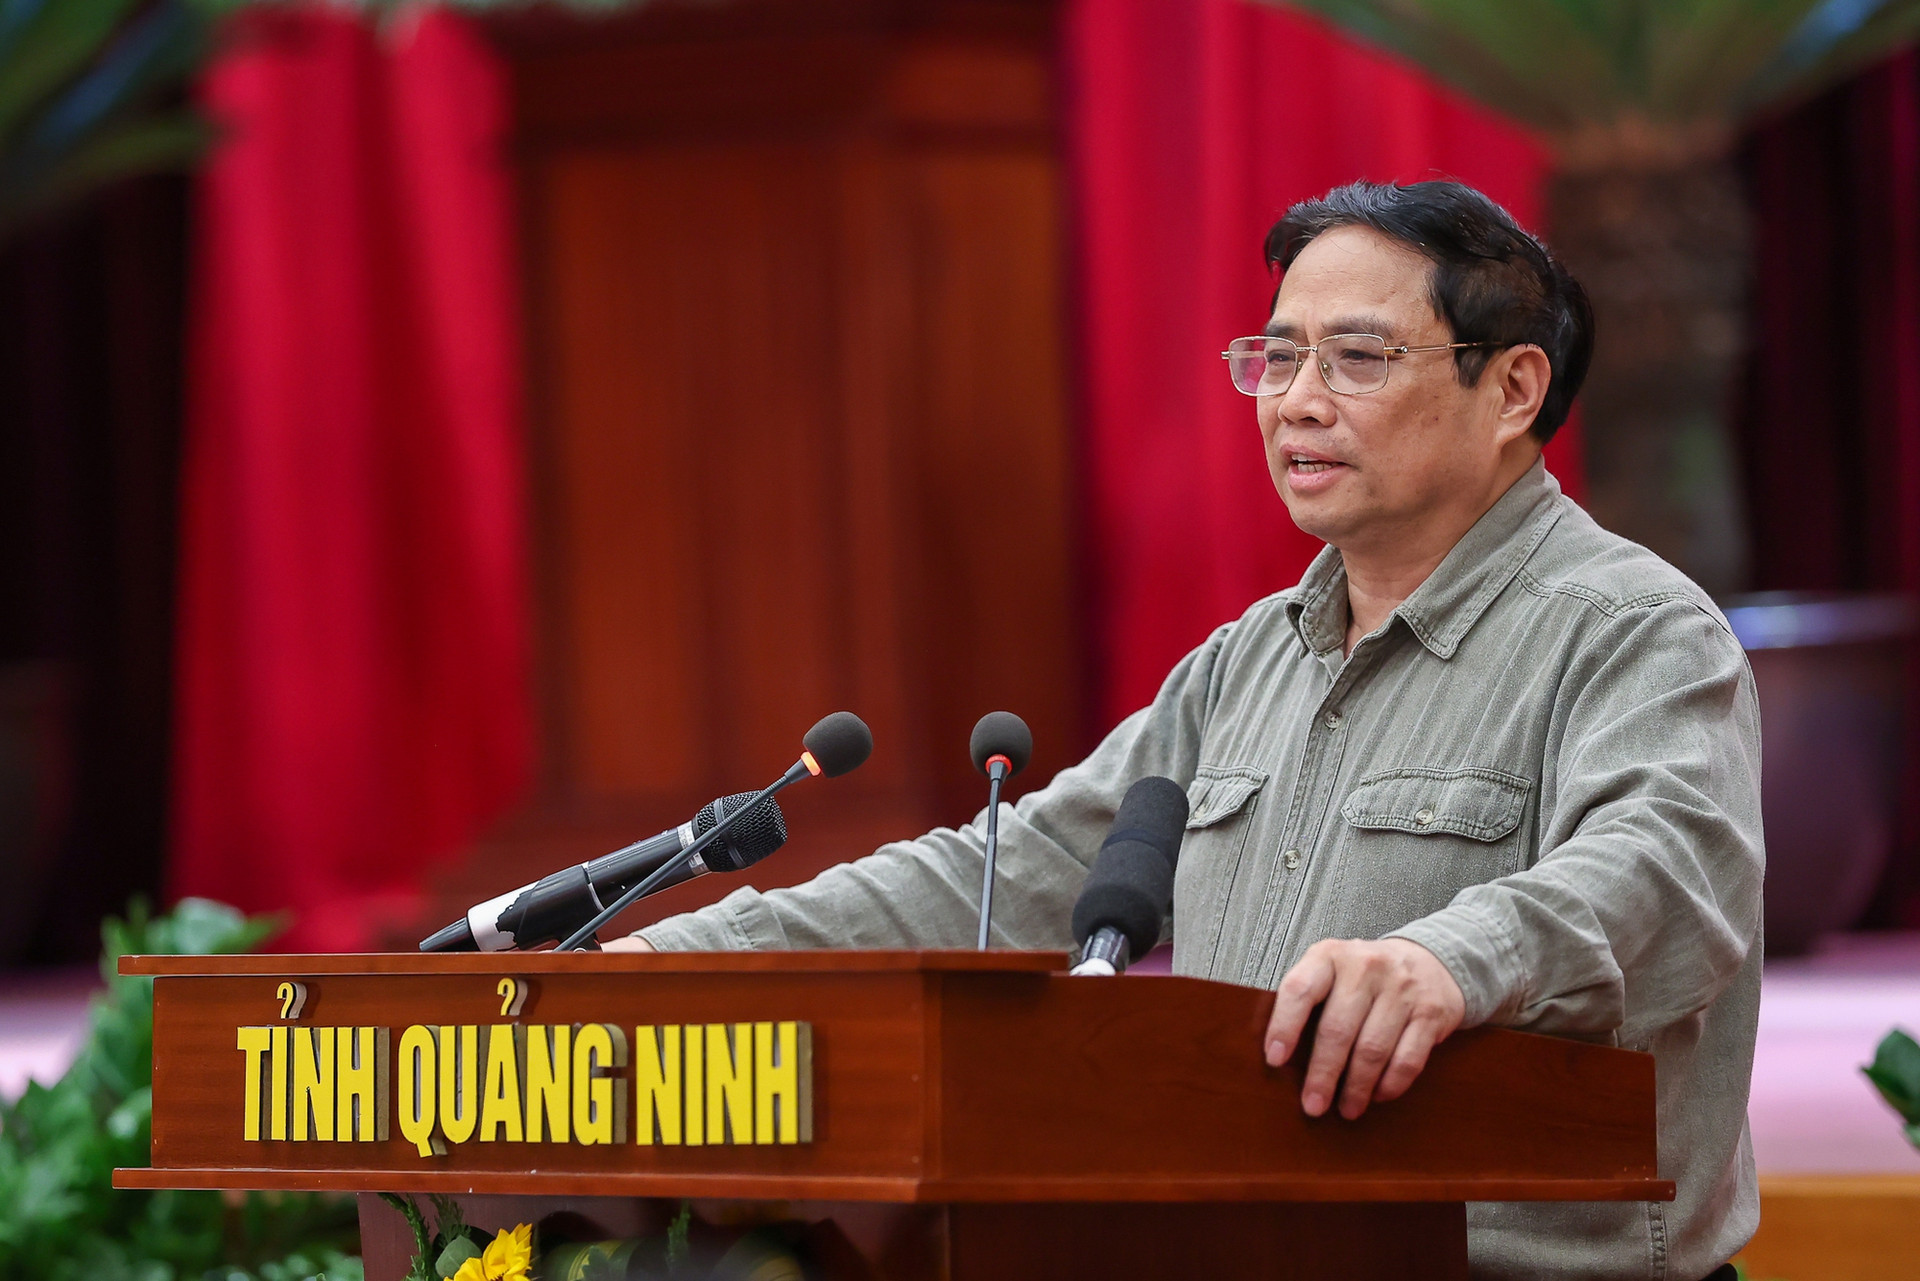 Thủ tướng: Quảng Ninh phải vươn lên tầm cao mới, phát triển giàu có và sạch đẹp - Ảnh 4.